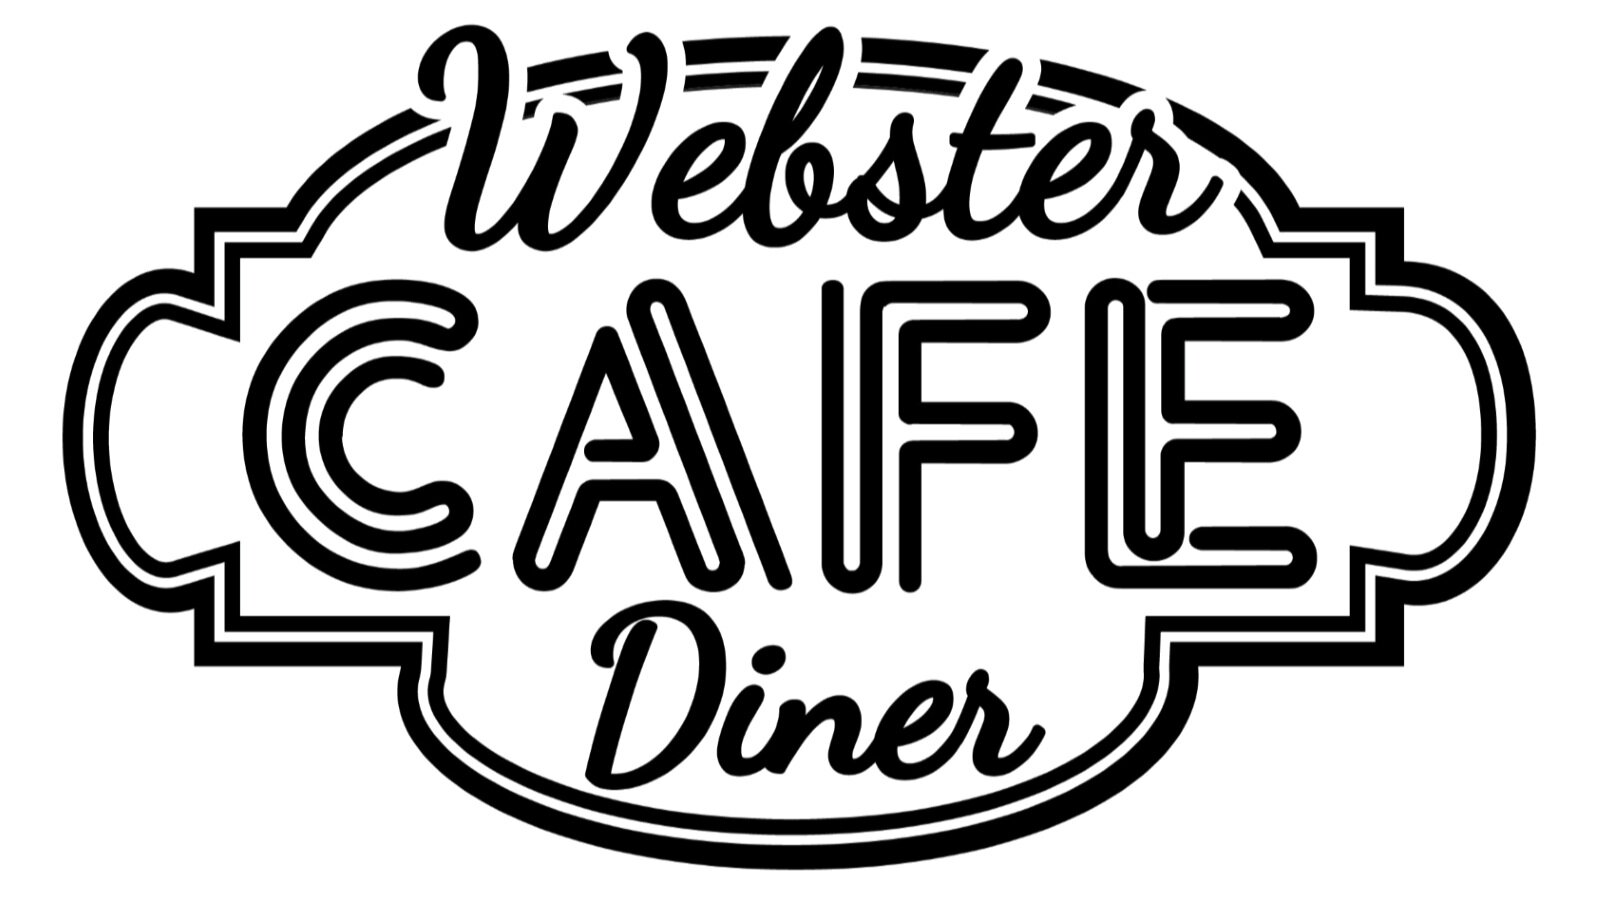 Webster Cafe Cafe &amp; Diner